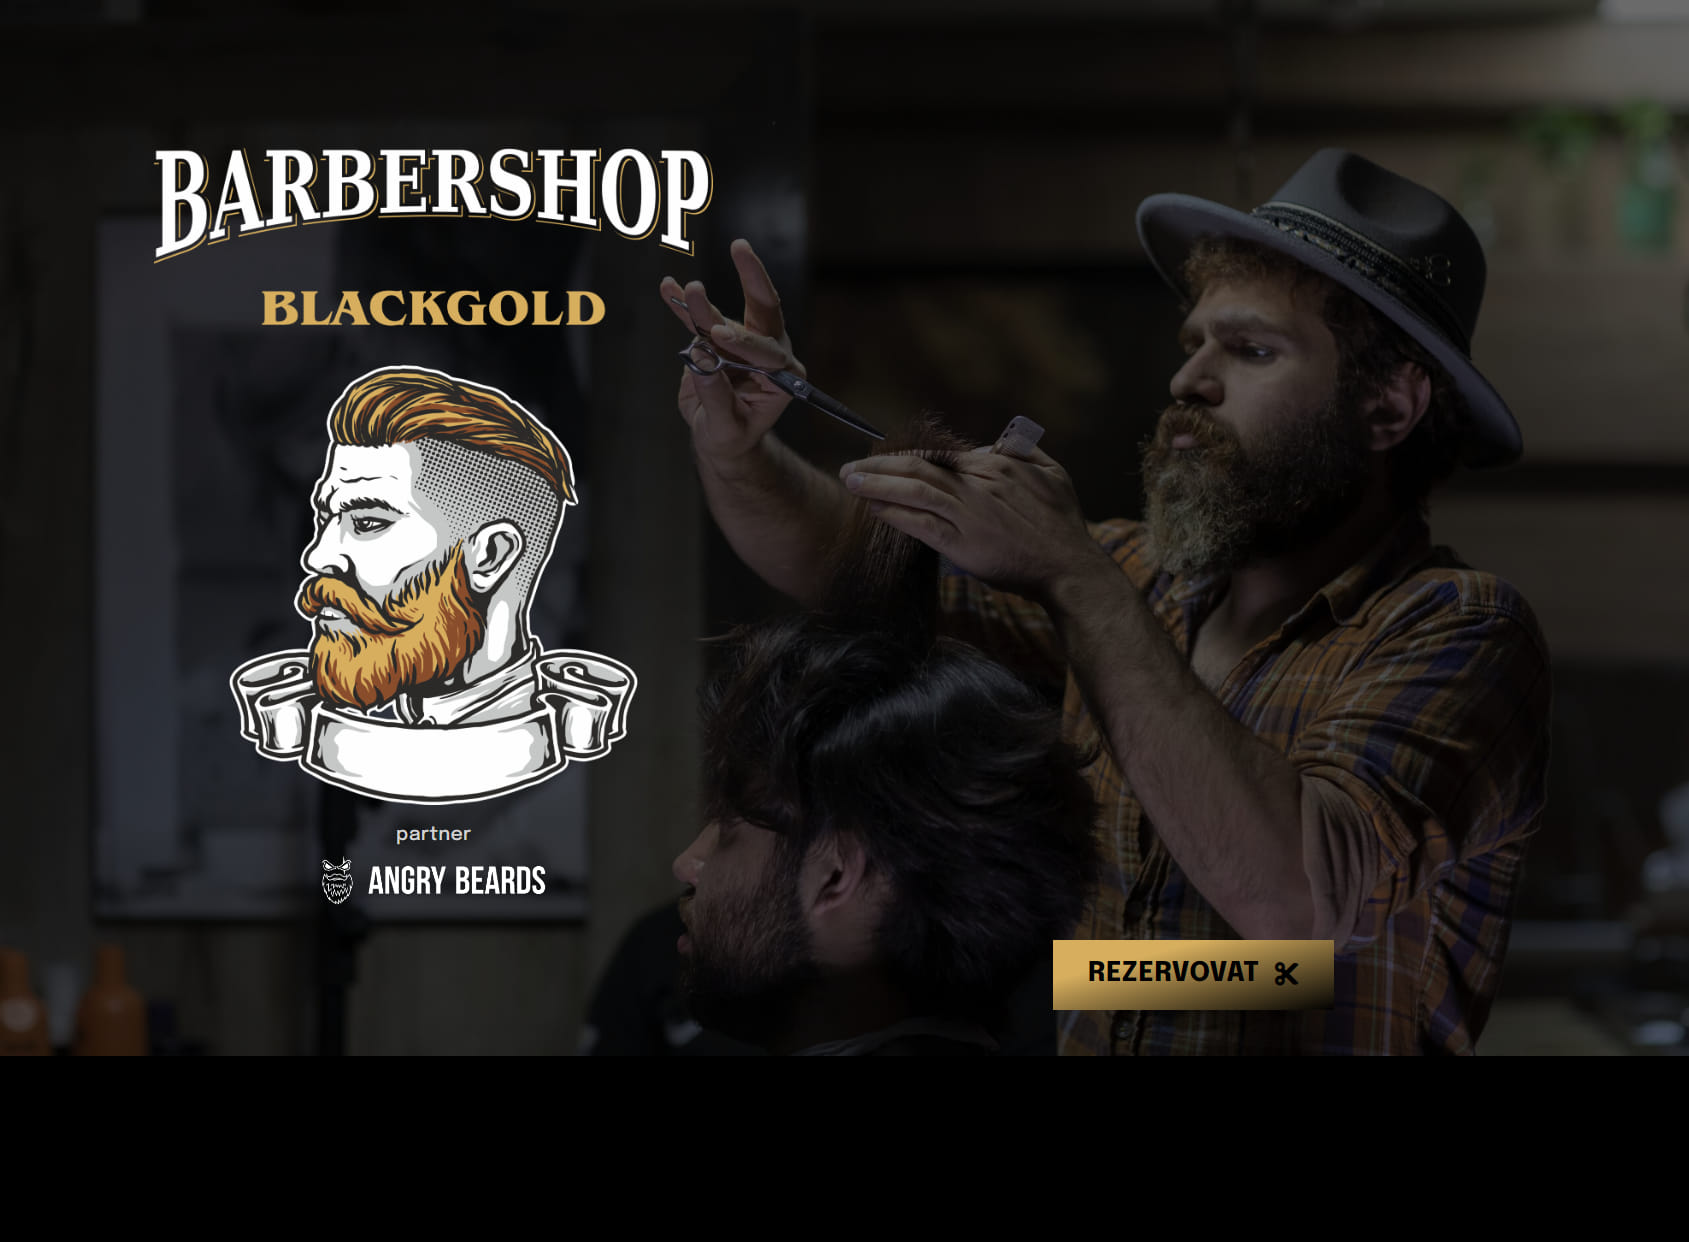 BlackGold Barbershop